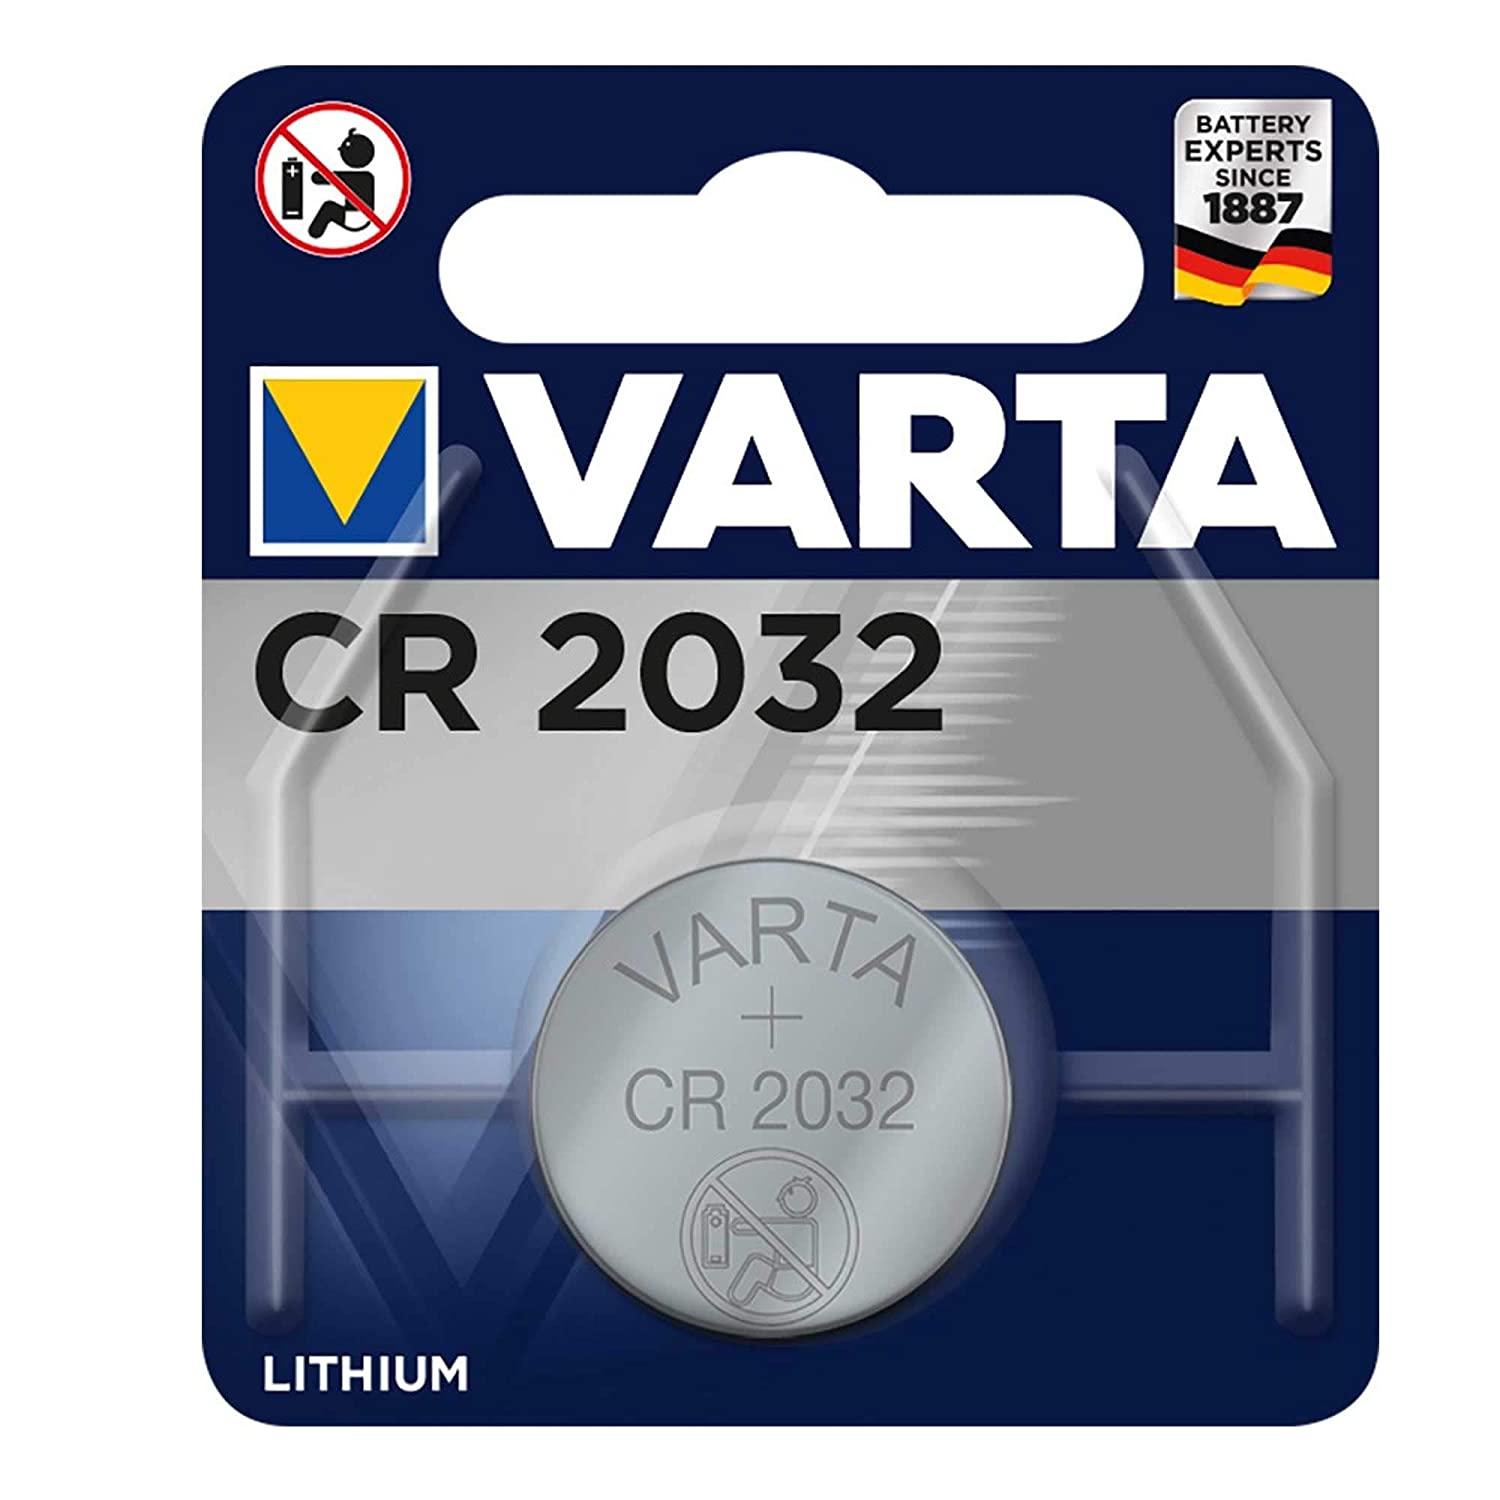 Achetez la pile bouton au lithium RMS CR2032